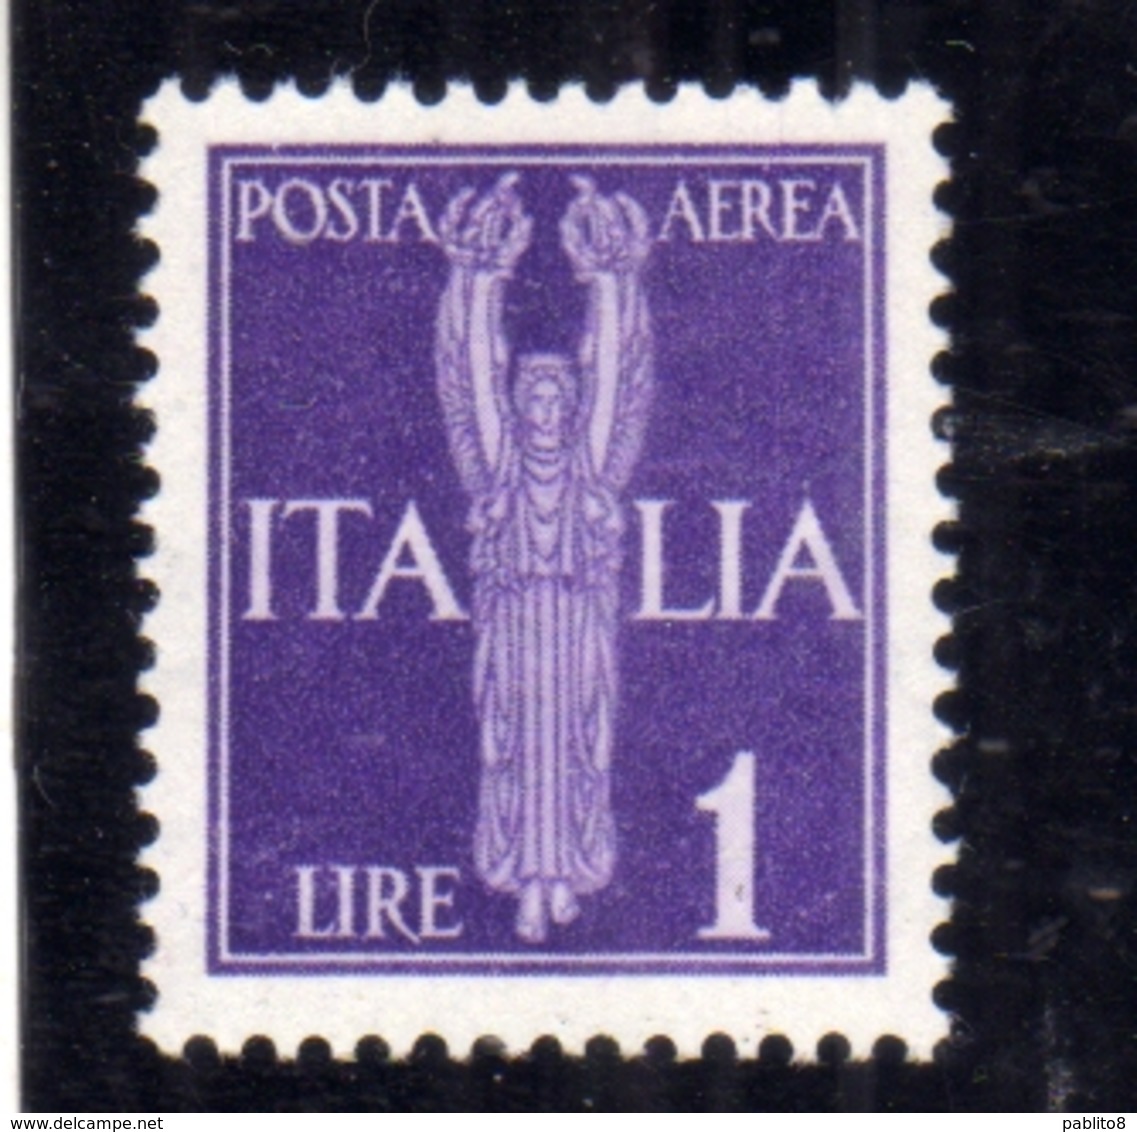 ITALIA REGNO ITALY KINGDOM 1944 REPUBBLICA SOCIALE ITALIANA RSI GNR POSTA AEREA AIR MAIL LIRE 1 MNH OTTIMA CENTRATURA - Correo Aéreo